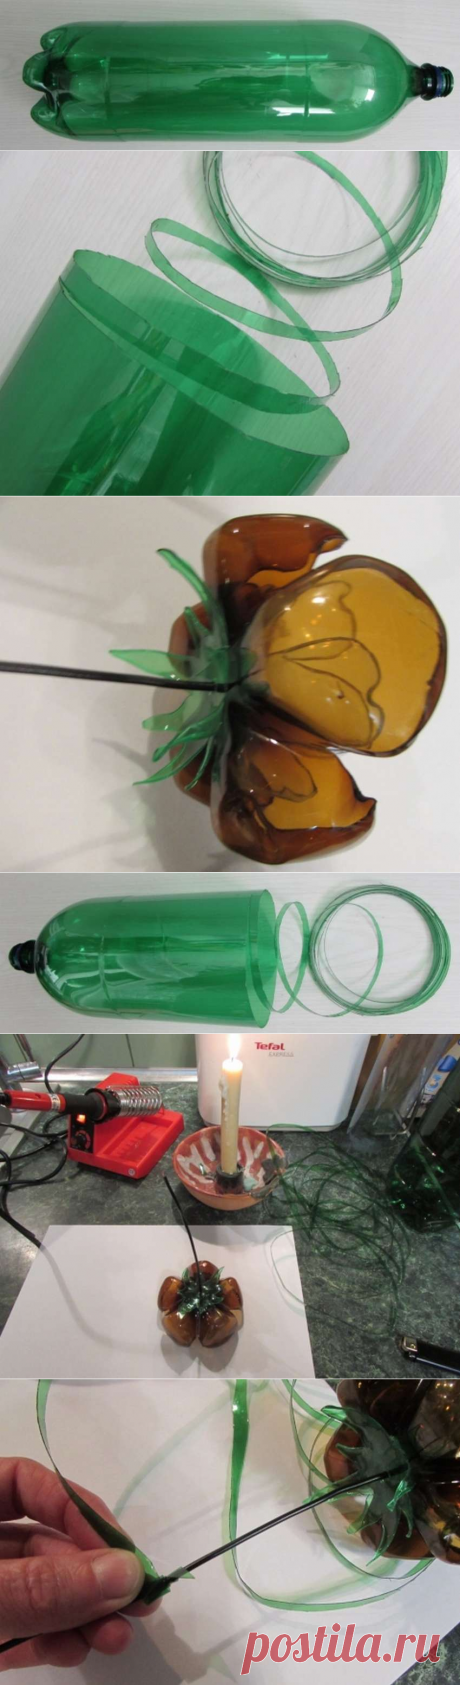 Цветы из донышек пластиковых бутылок, подробная инструкция